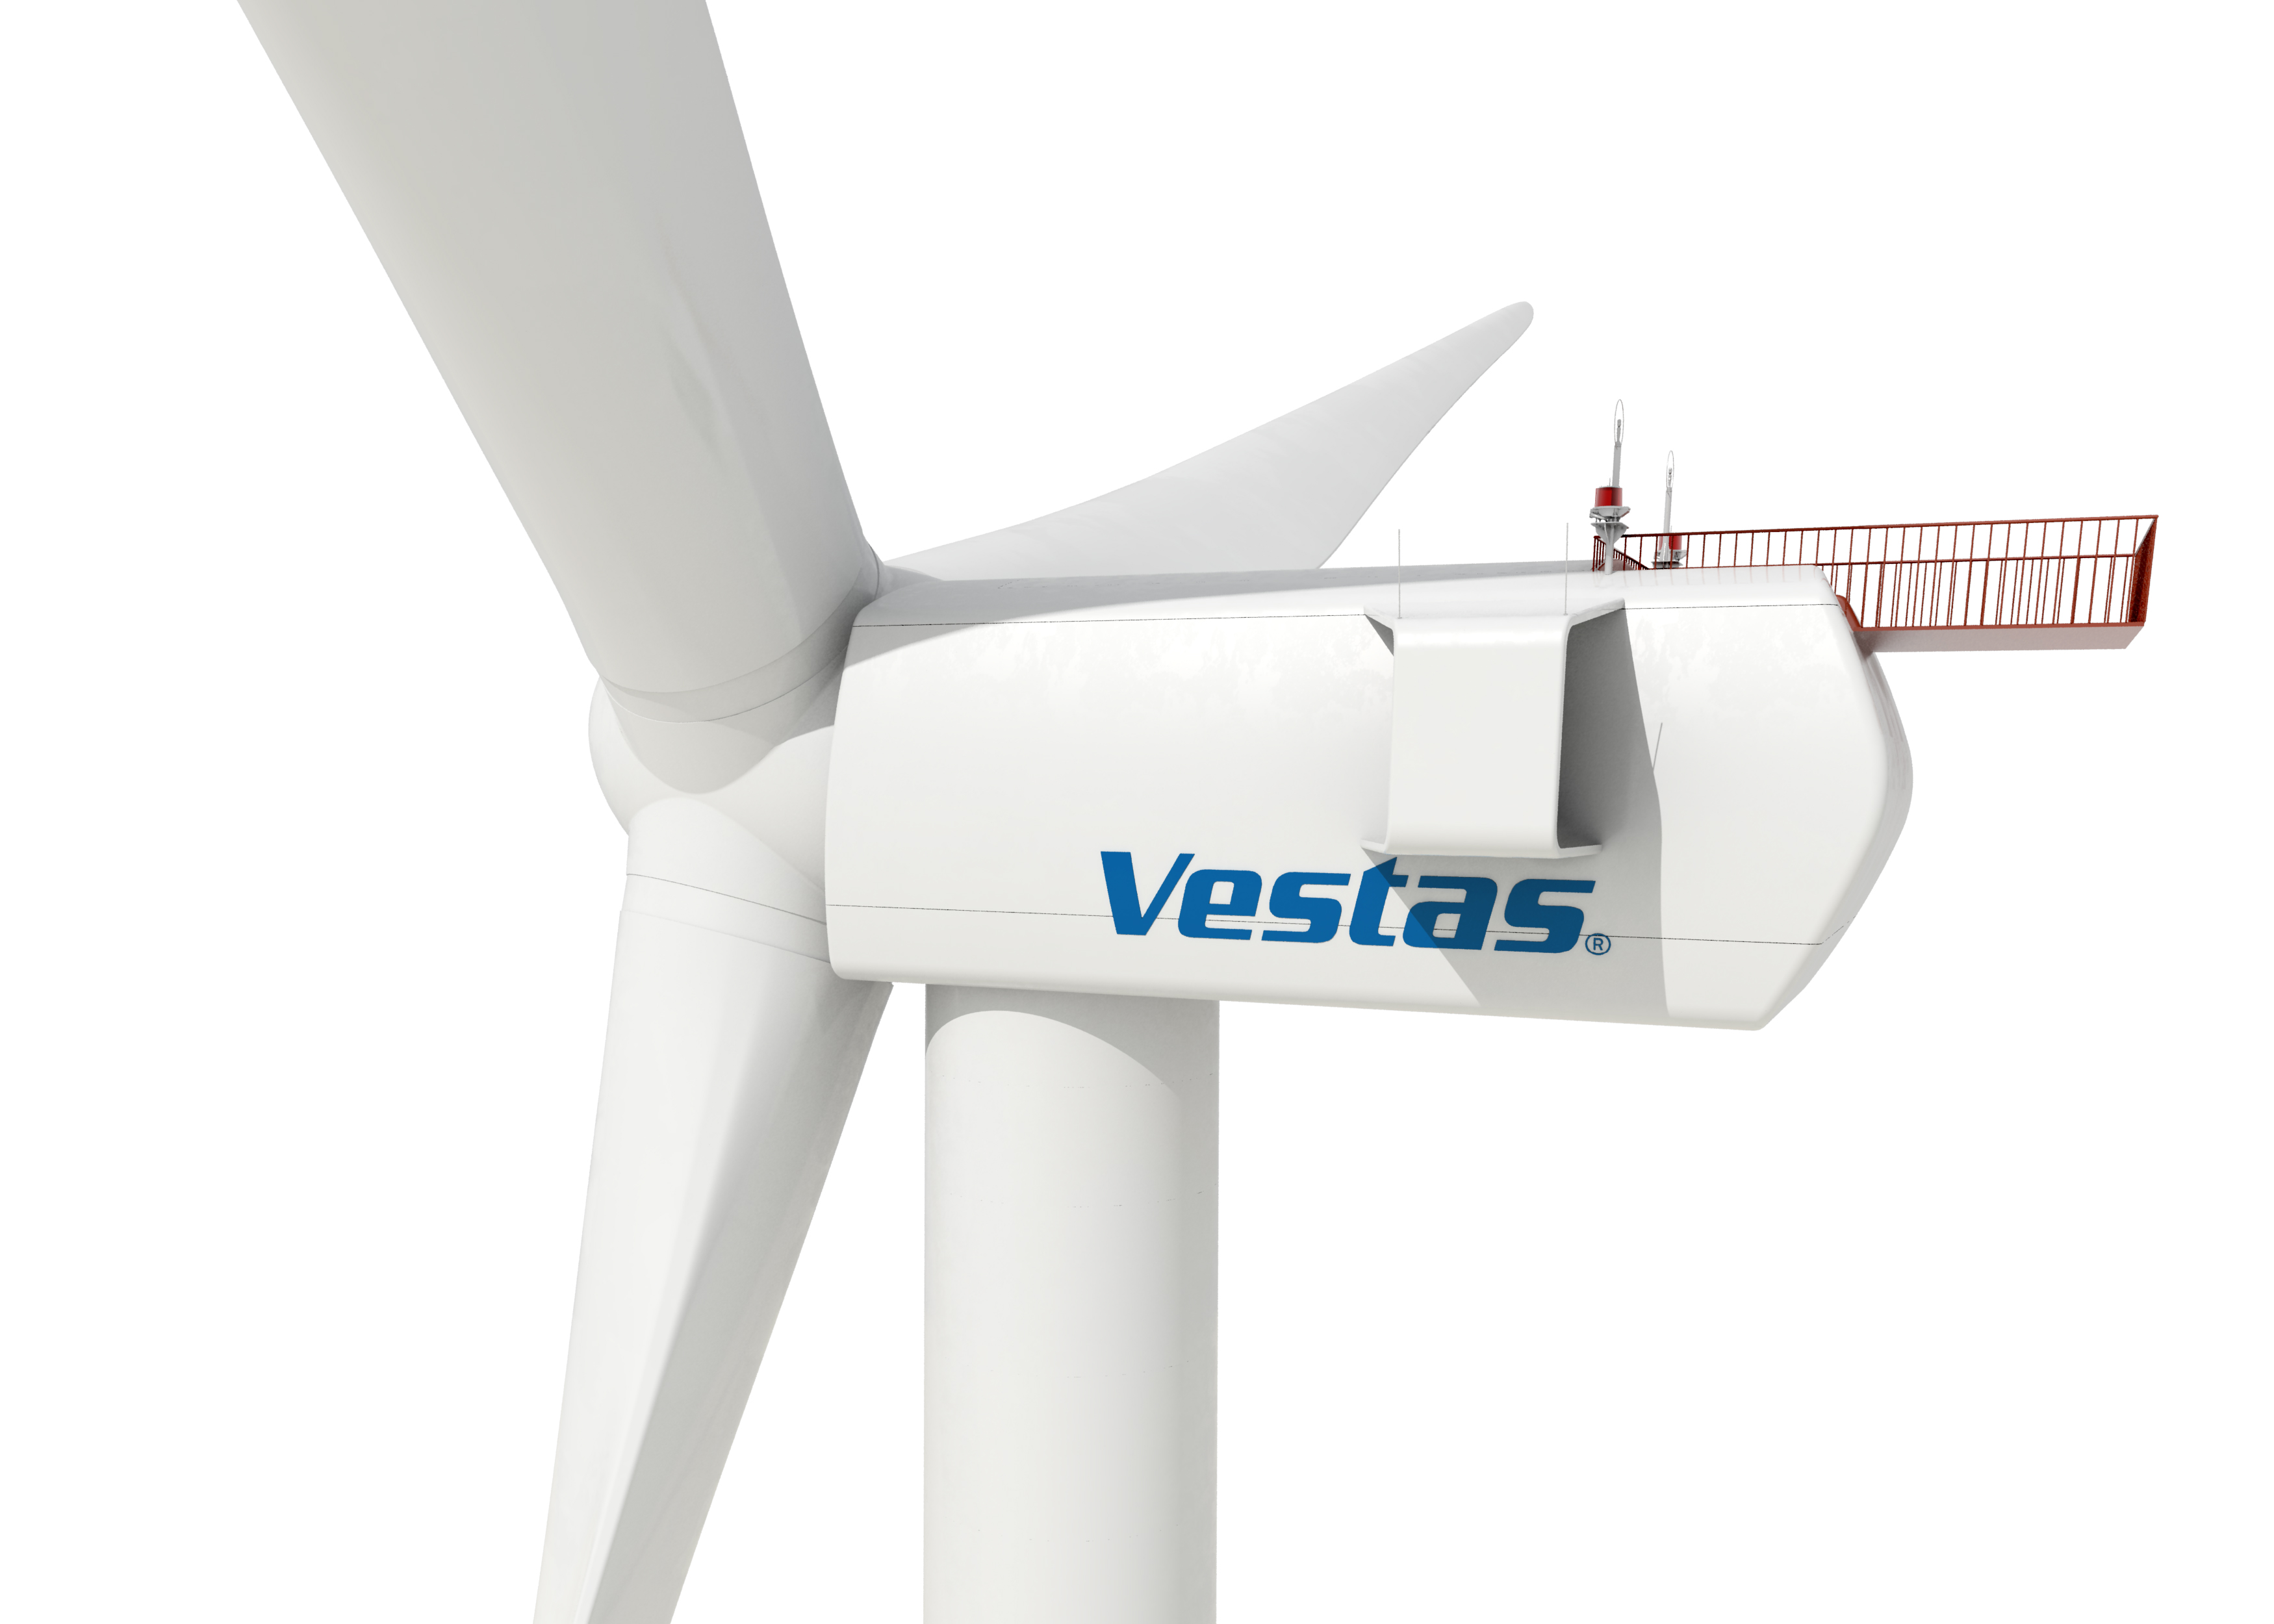 Eólica en Polonia: Vestas vende 20 aerogeneradores para un parque eólico de Aldesa, por José Santamarta